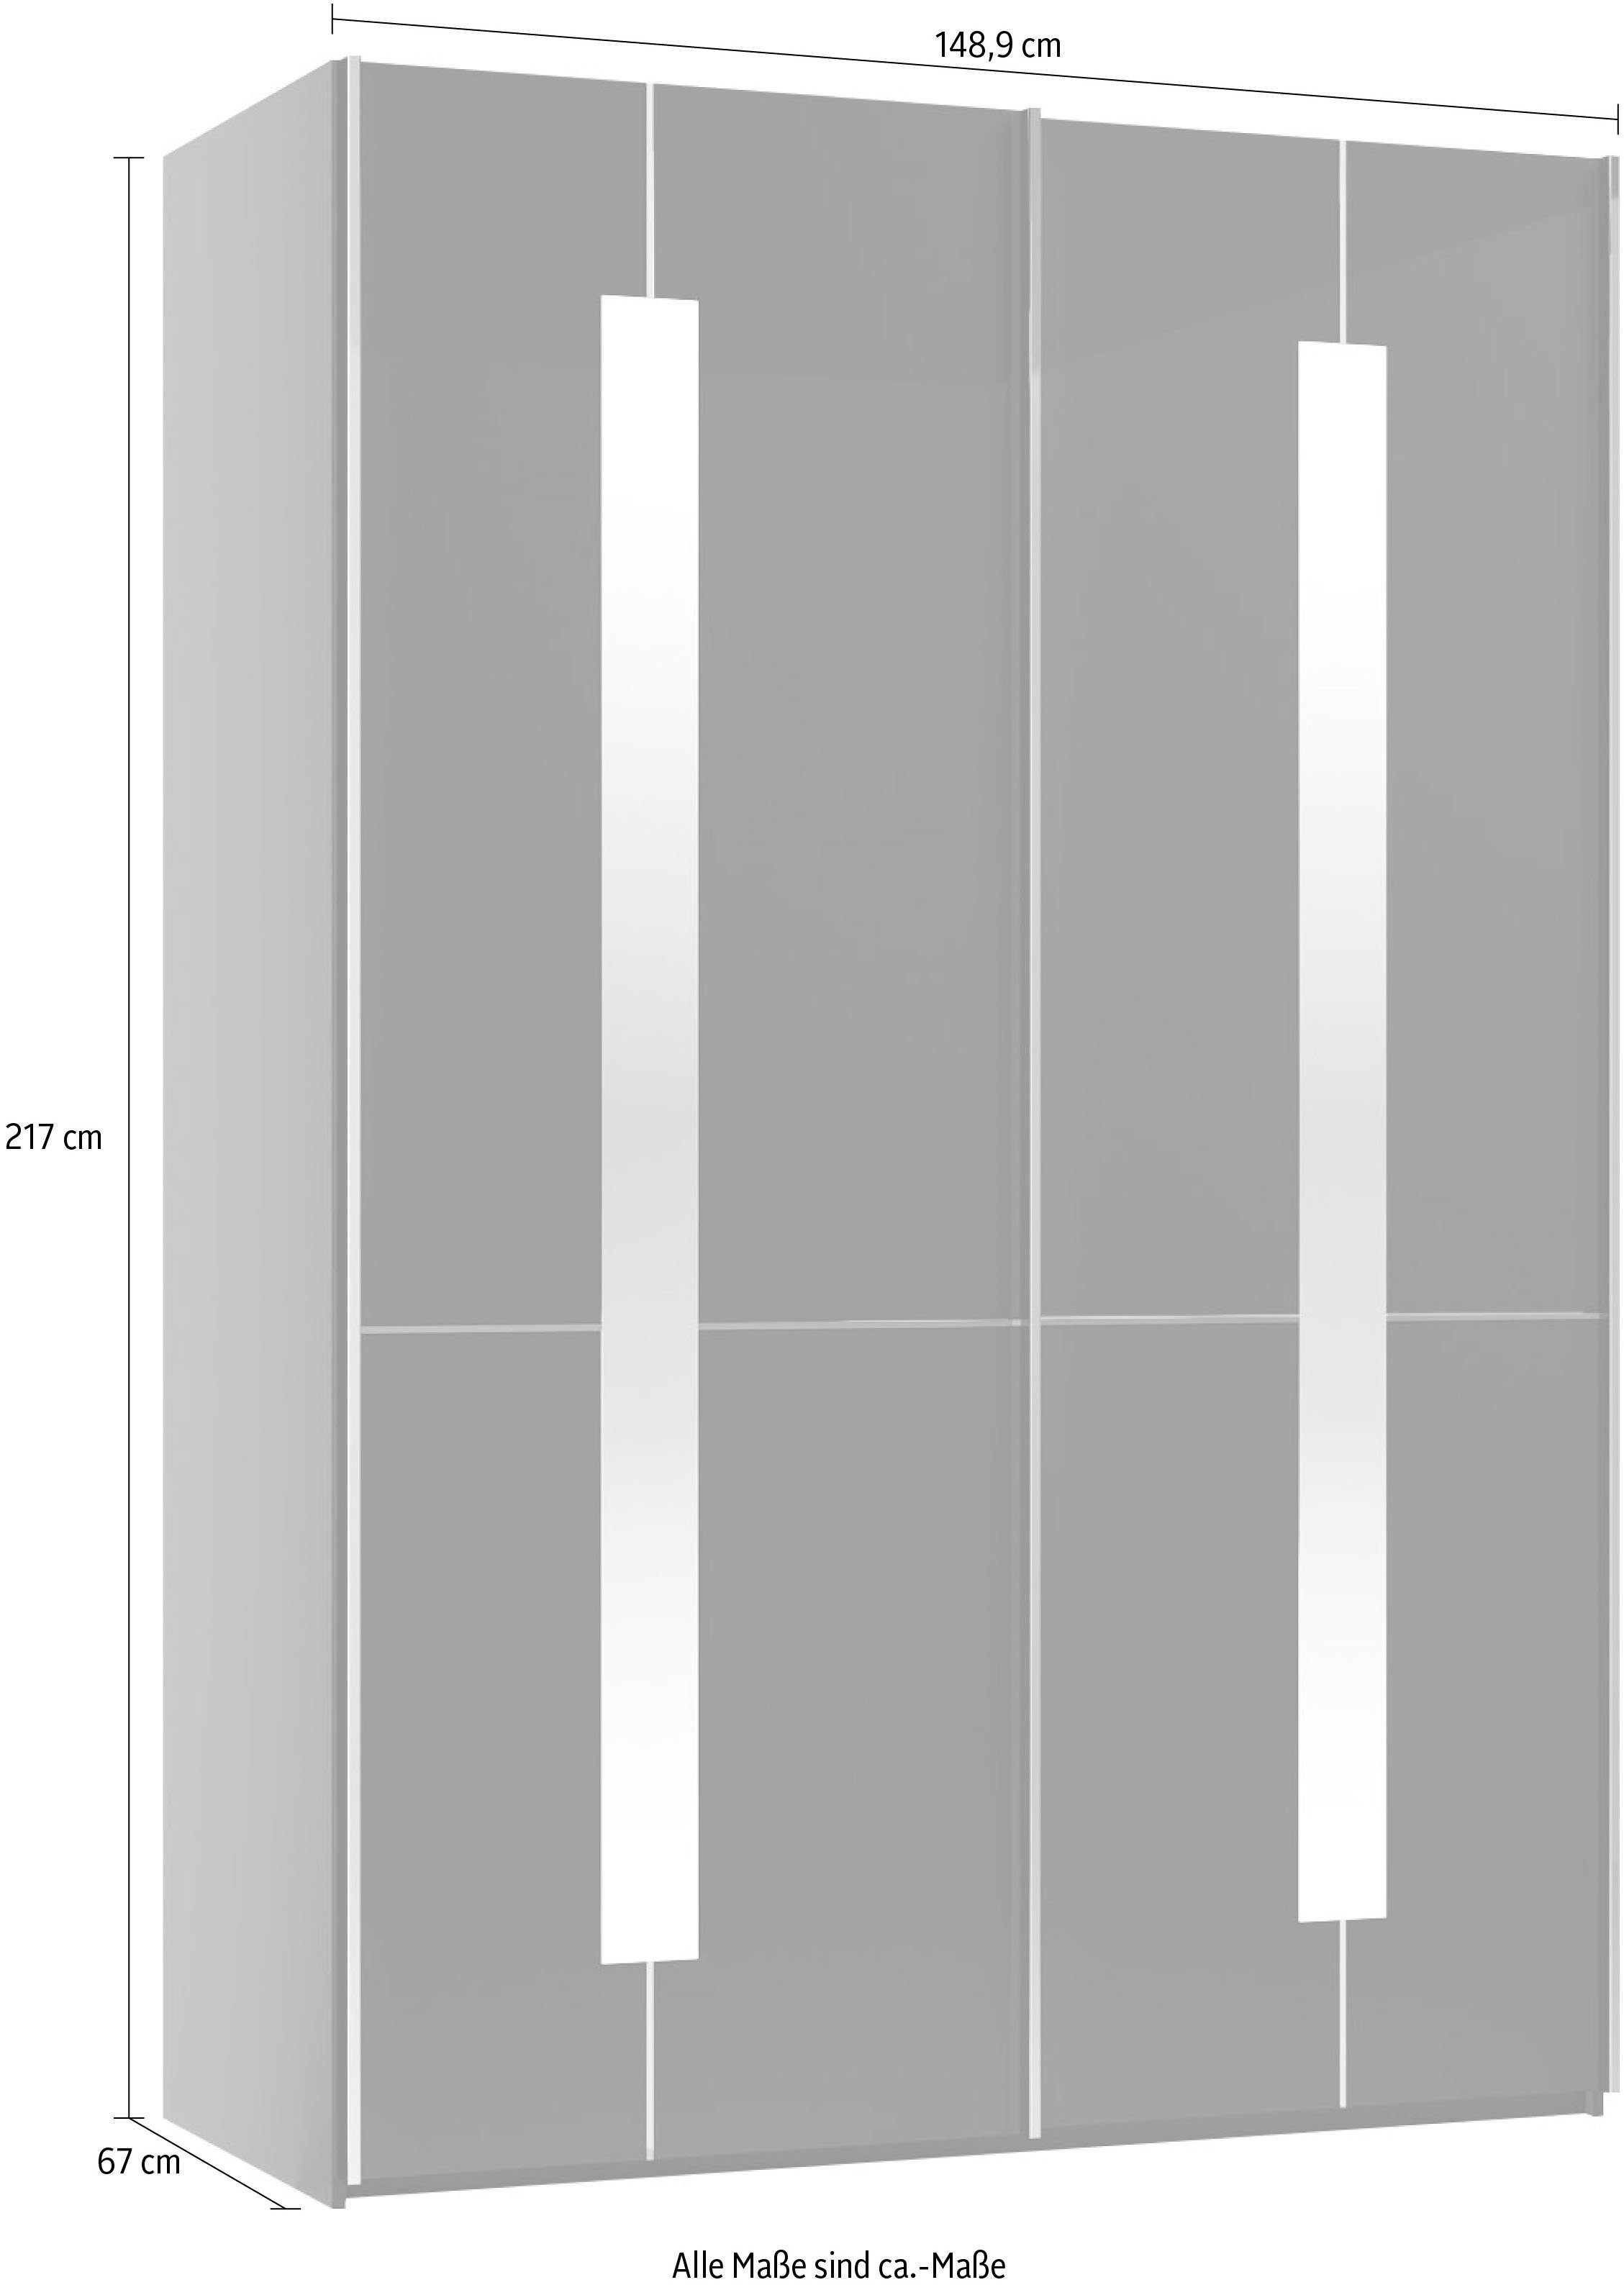 Zierspiegel GALLERY Imola mit Musterring inkl. branded inkl. M W Graphit by Einlegeböden Kleiderstangen, Schwebetürenschrank und Glastüren